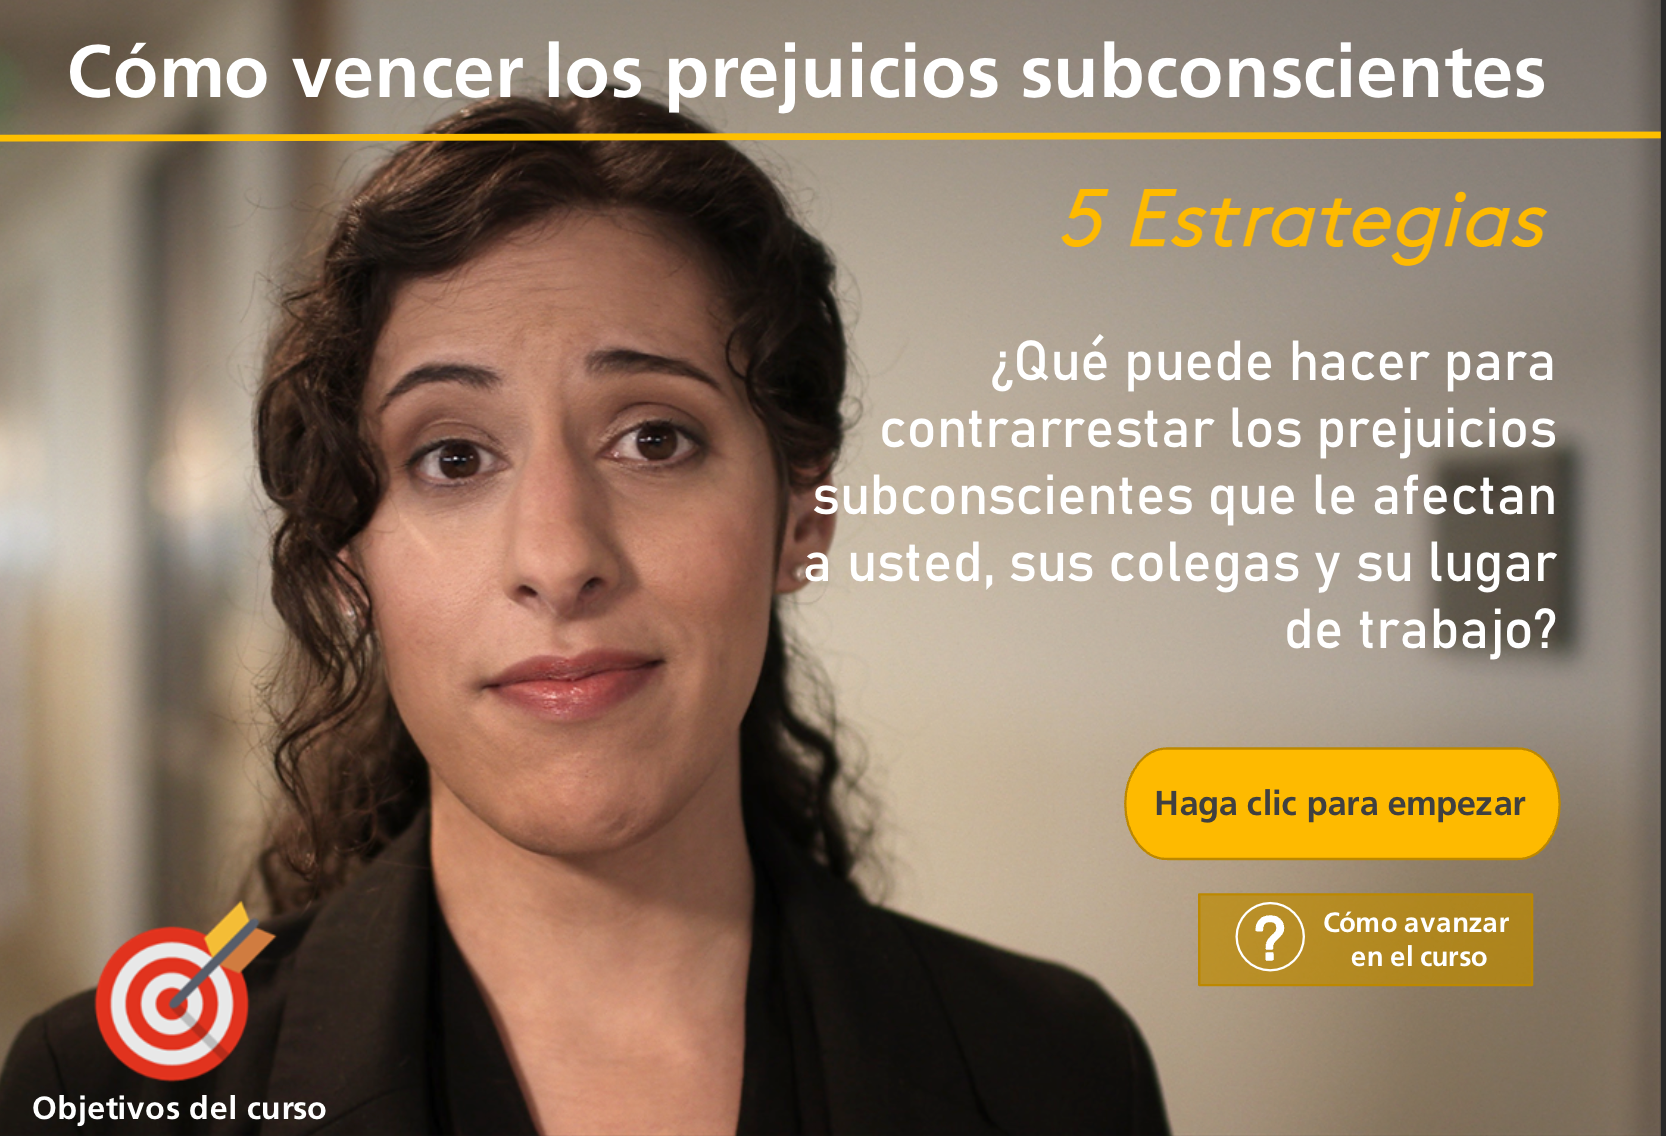 Cover image for the Spanish version of Defeating Unconscious Bias. Cómo vencer los prejuicios subconscientes: 5 Estrategias